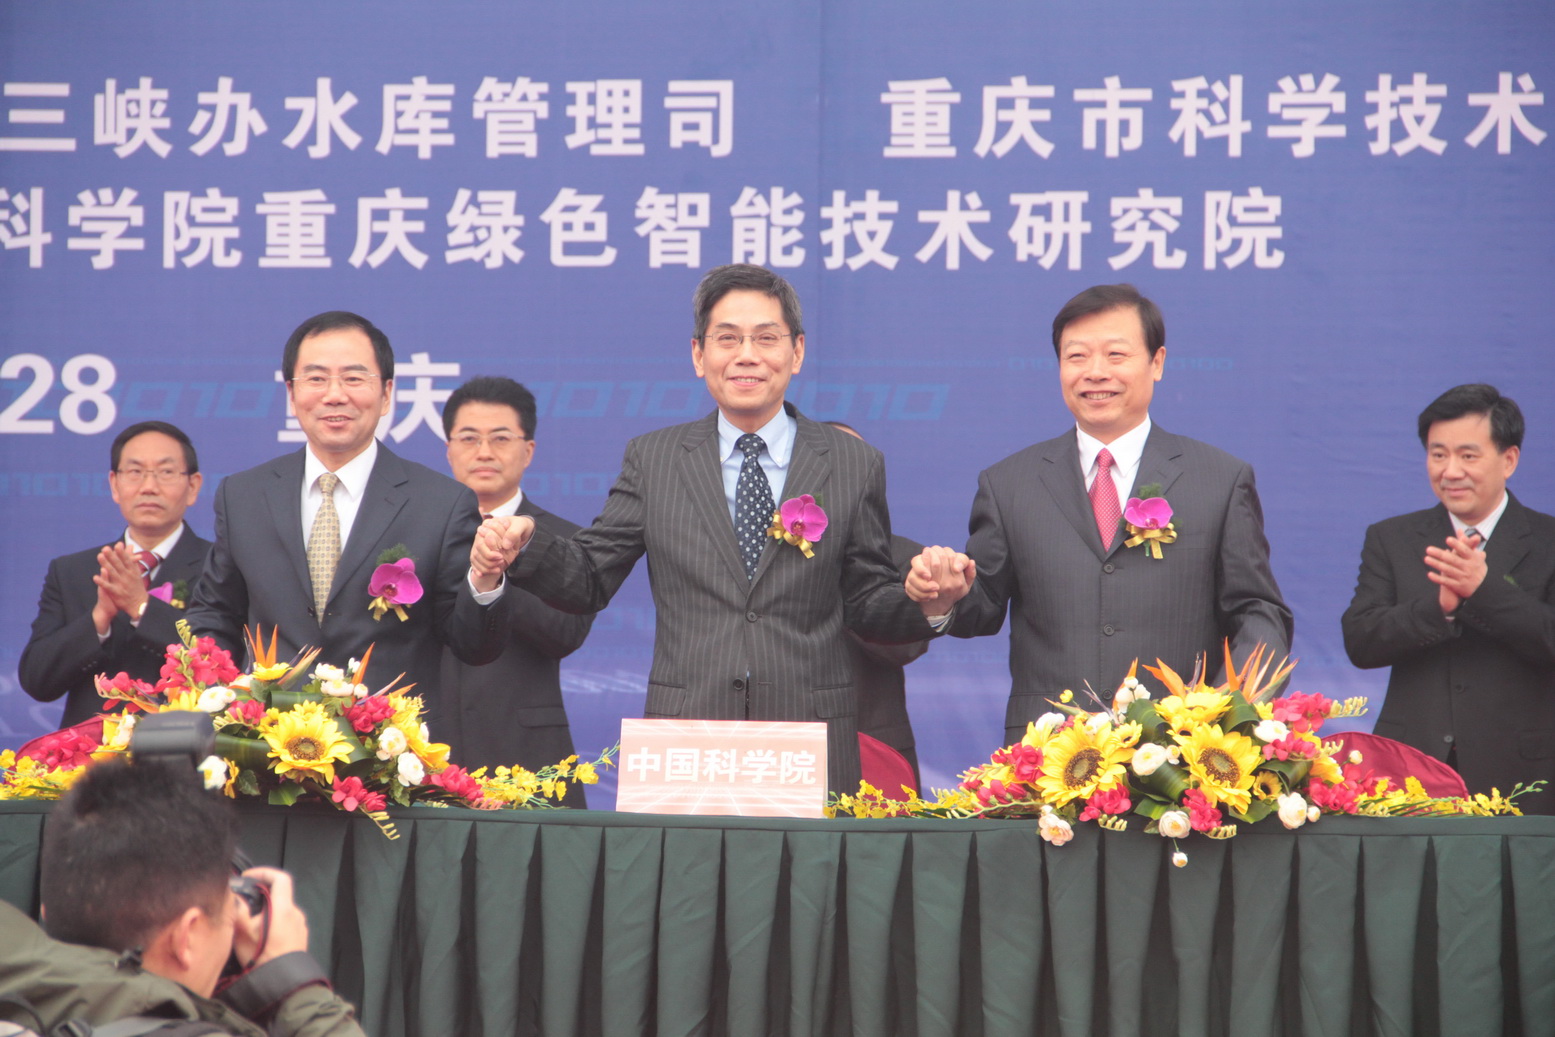 中国科学院重庆绿色智能技术研究院共建签约暨奠基仪式在重庆举行